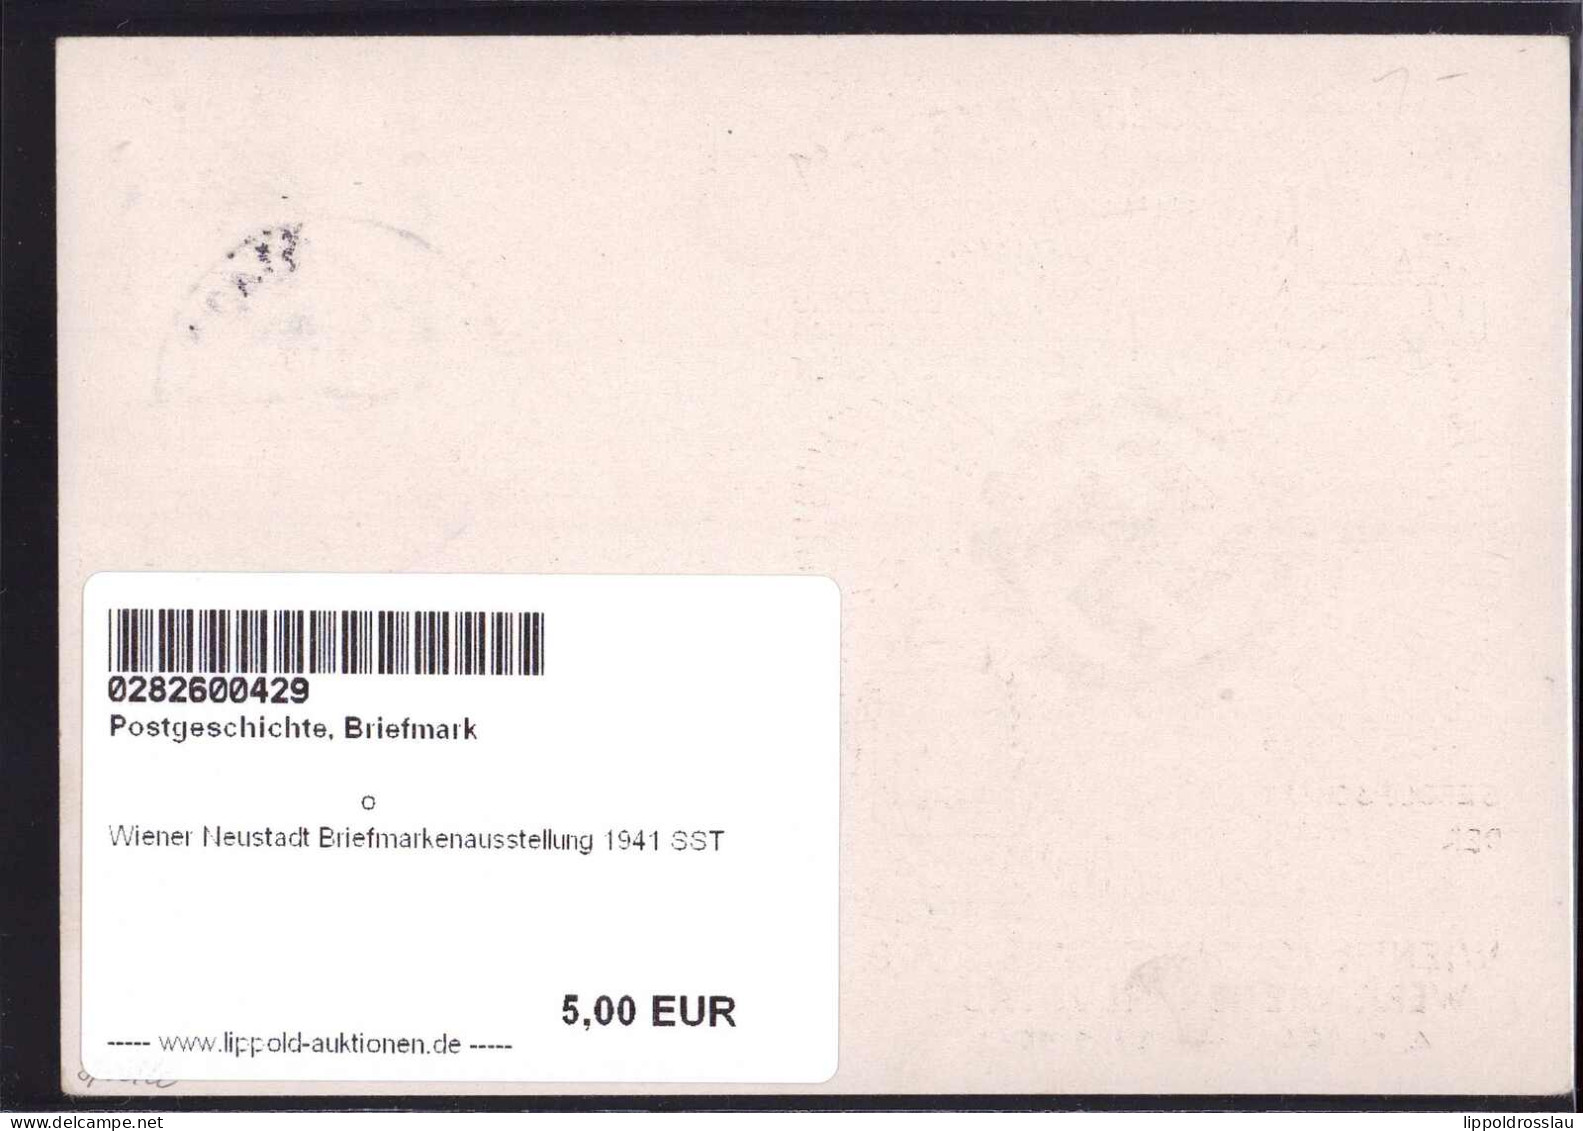 Gest. Wiener Neustadt Briefmarkenausstellung 1941 SST - Timbres (représentations)